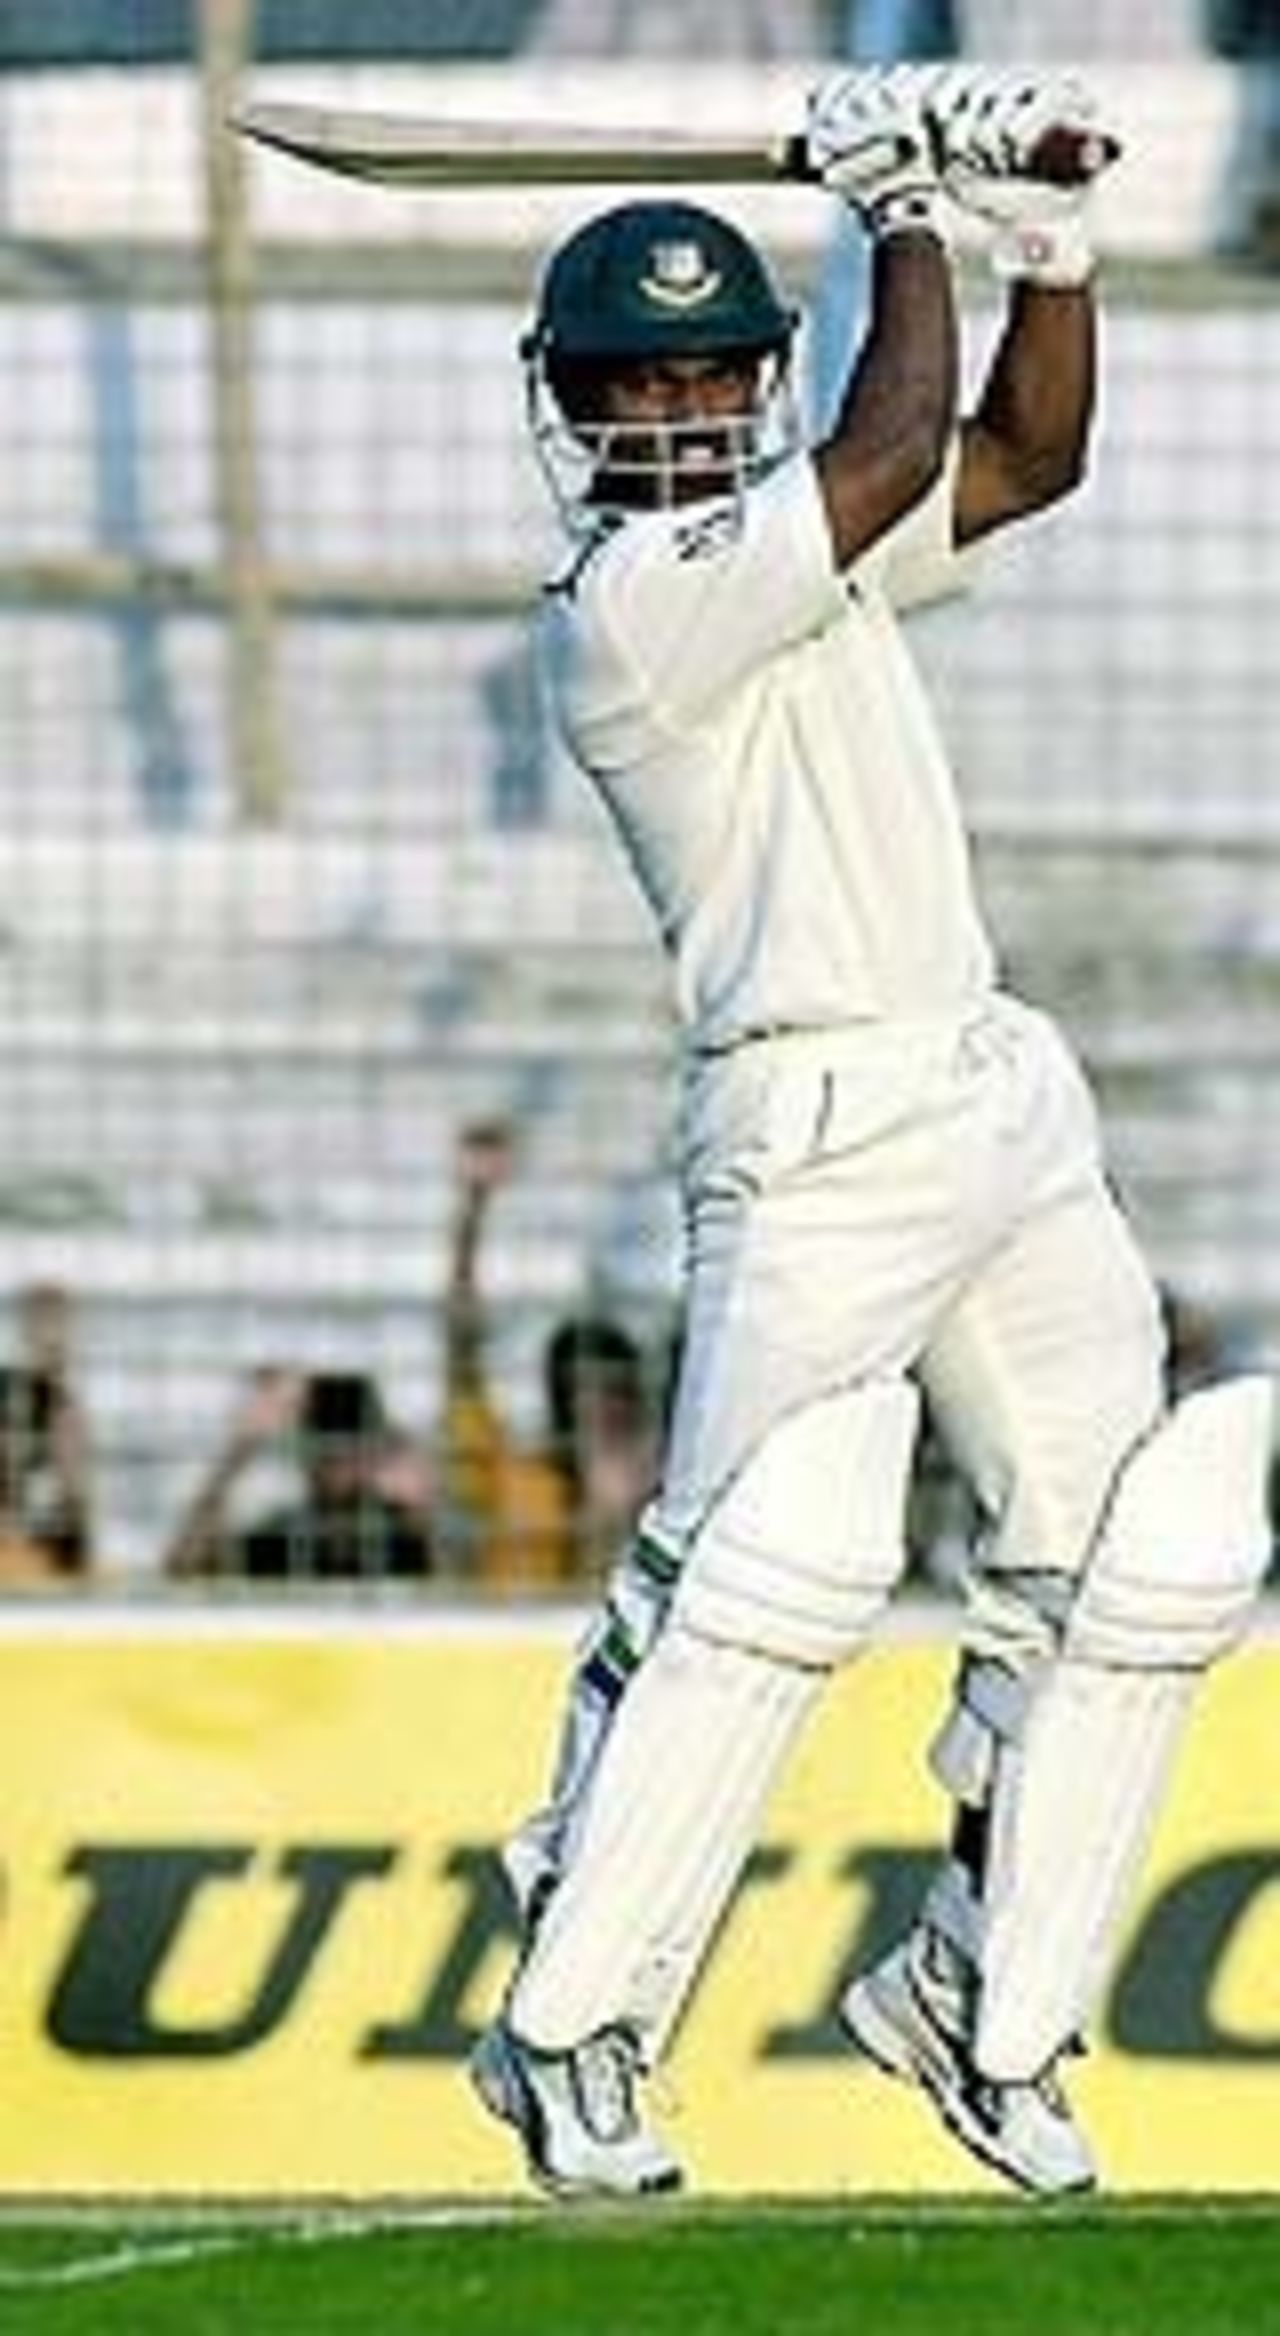 Rajin Saleh cuts fiercely, Bangladesh v Zimbabwe, 1st Test, Chittagong, 1st day, January 6, 2005